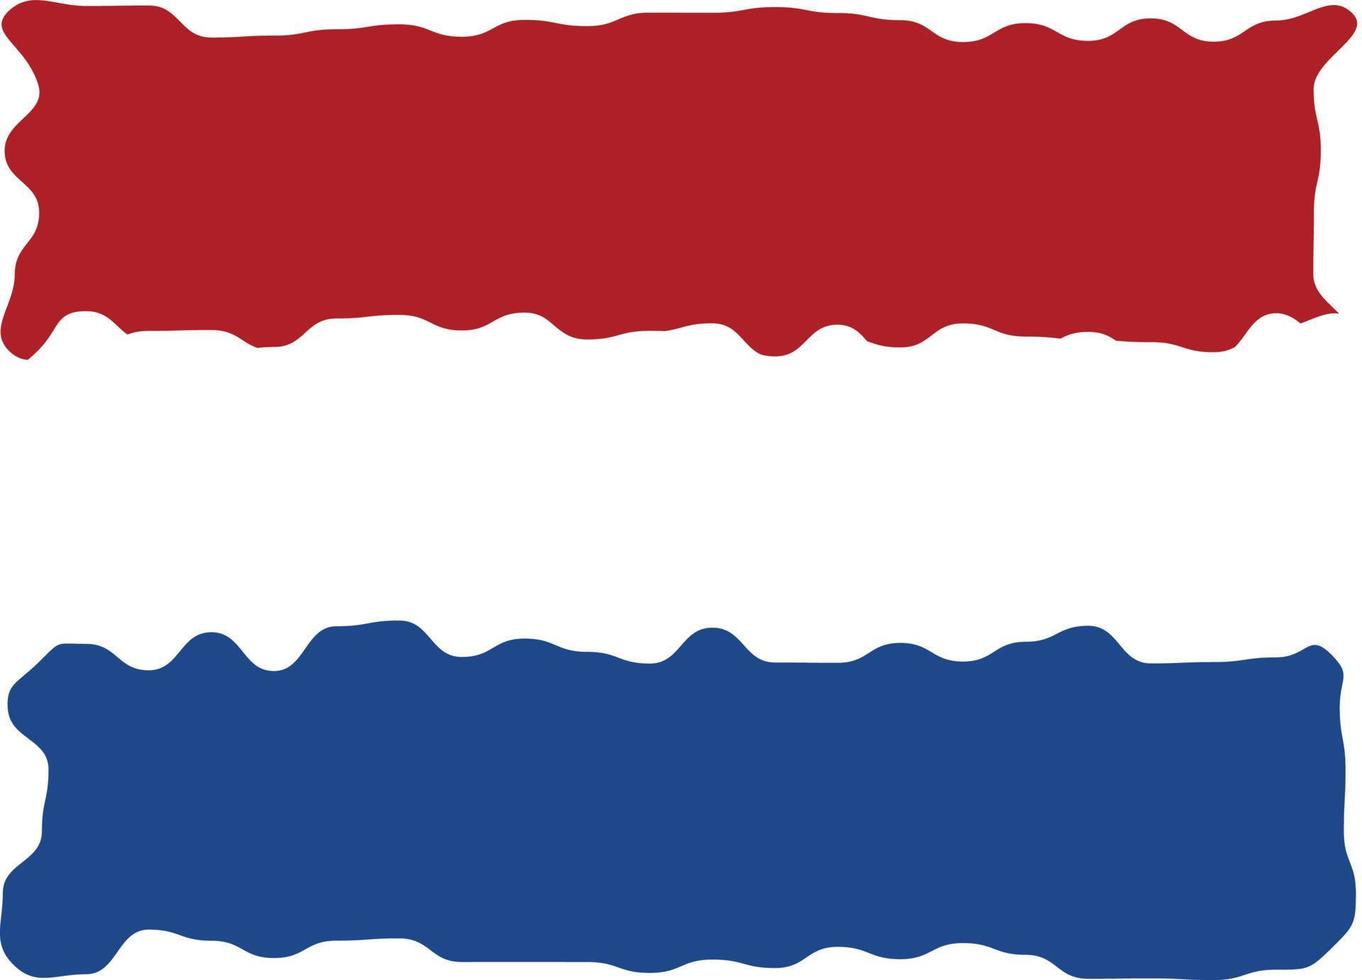 Nederländerna, borsta stroke flagga av Nederländerna, grunge nederländerna flagga, flagga vektor illustration, vattenfärg stil flagga av holland, röd och vit och blå färger